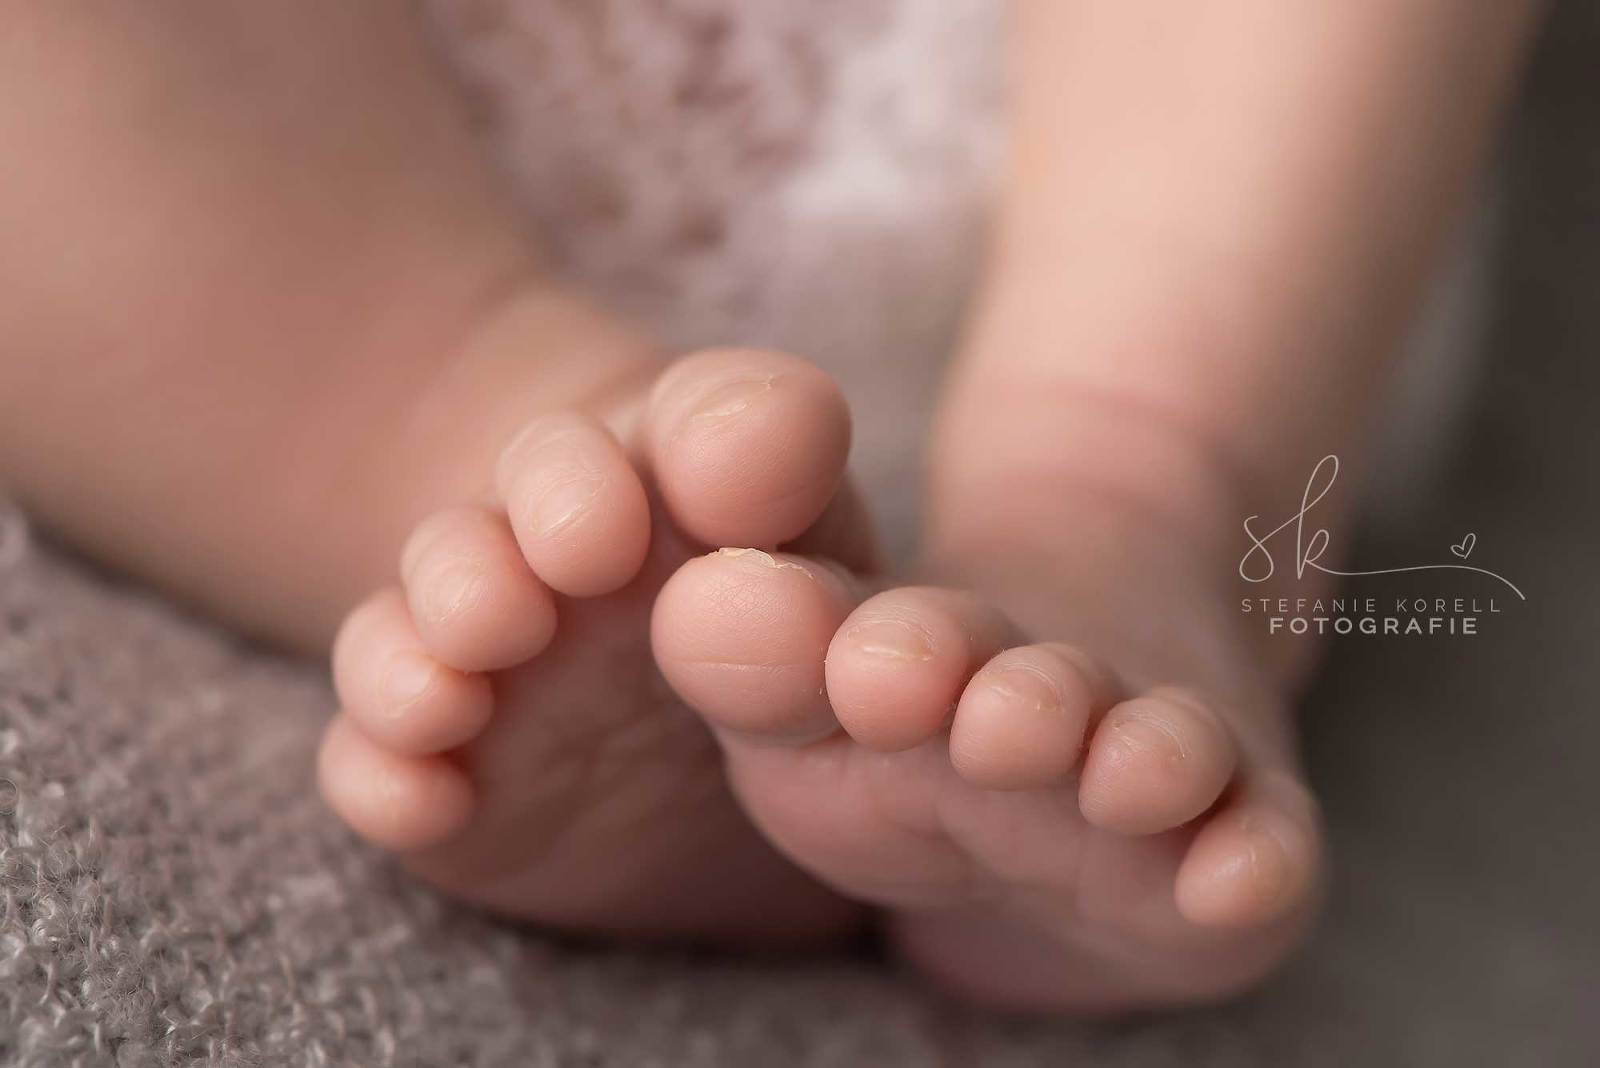 Neugeborenenfotografin Eberdingen Stefanie Korell Fotografie